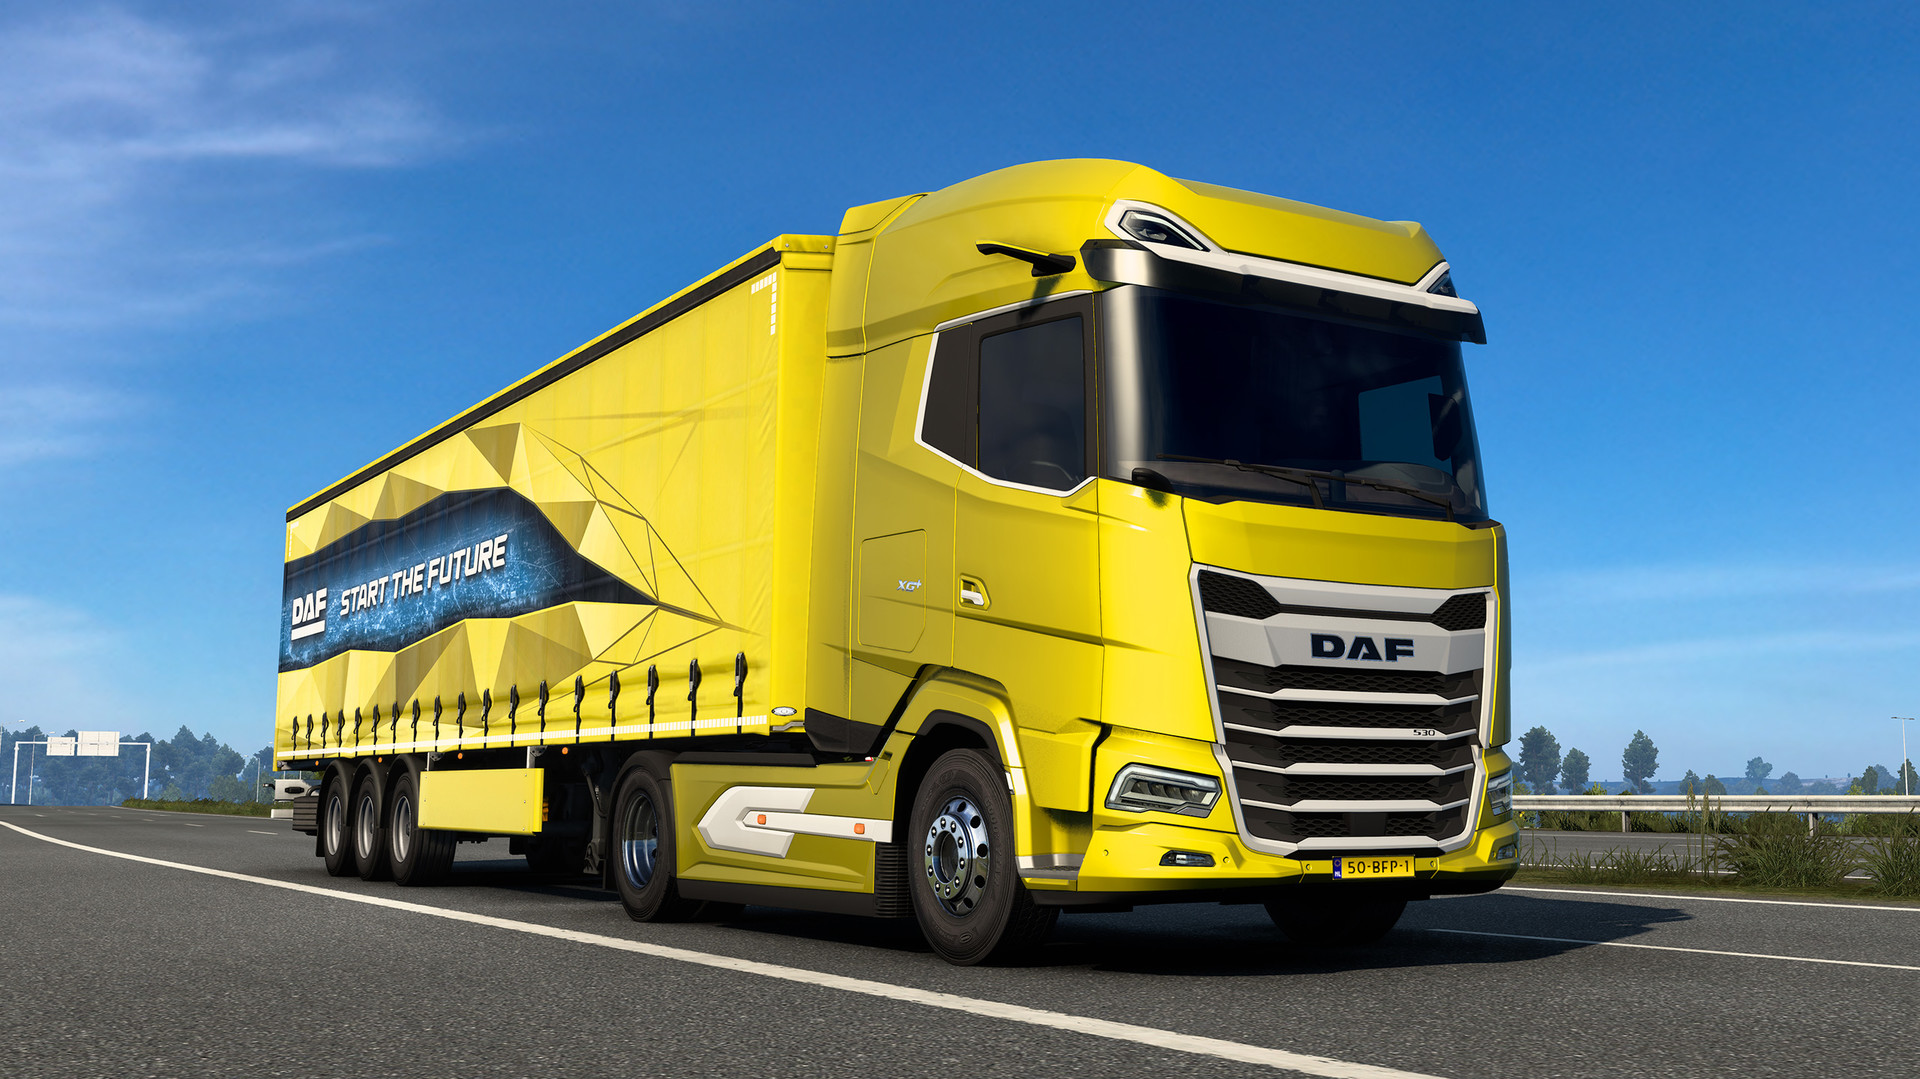 Euro Truck Simulator 2 - DAF XG/XG+ de Scs Software — avis et critiques ...